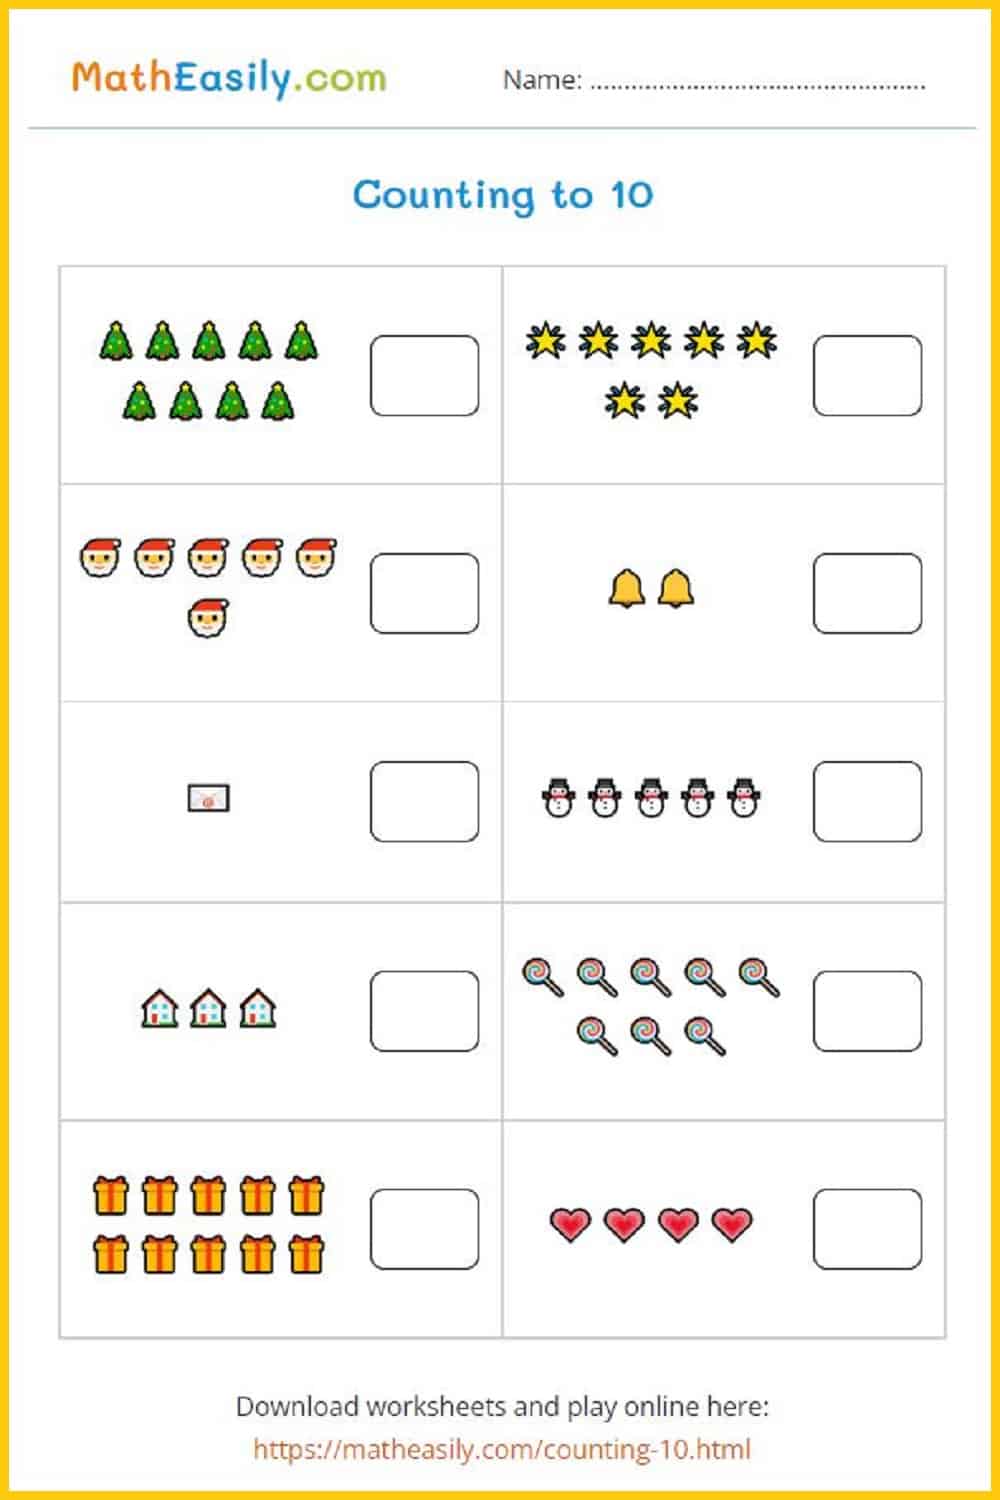 Christmas counting to 10.
Christmas counting worksheets PDF. Christmas counting activities. Christmas counting games printable.